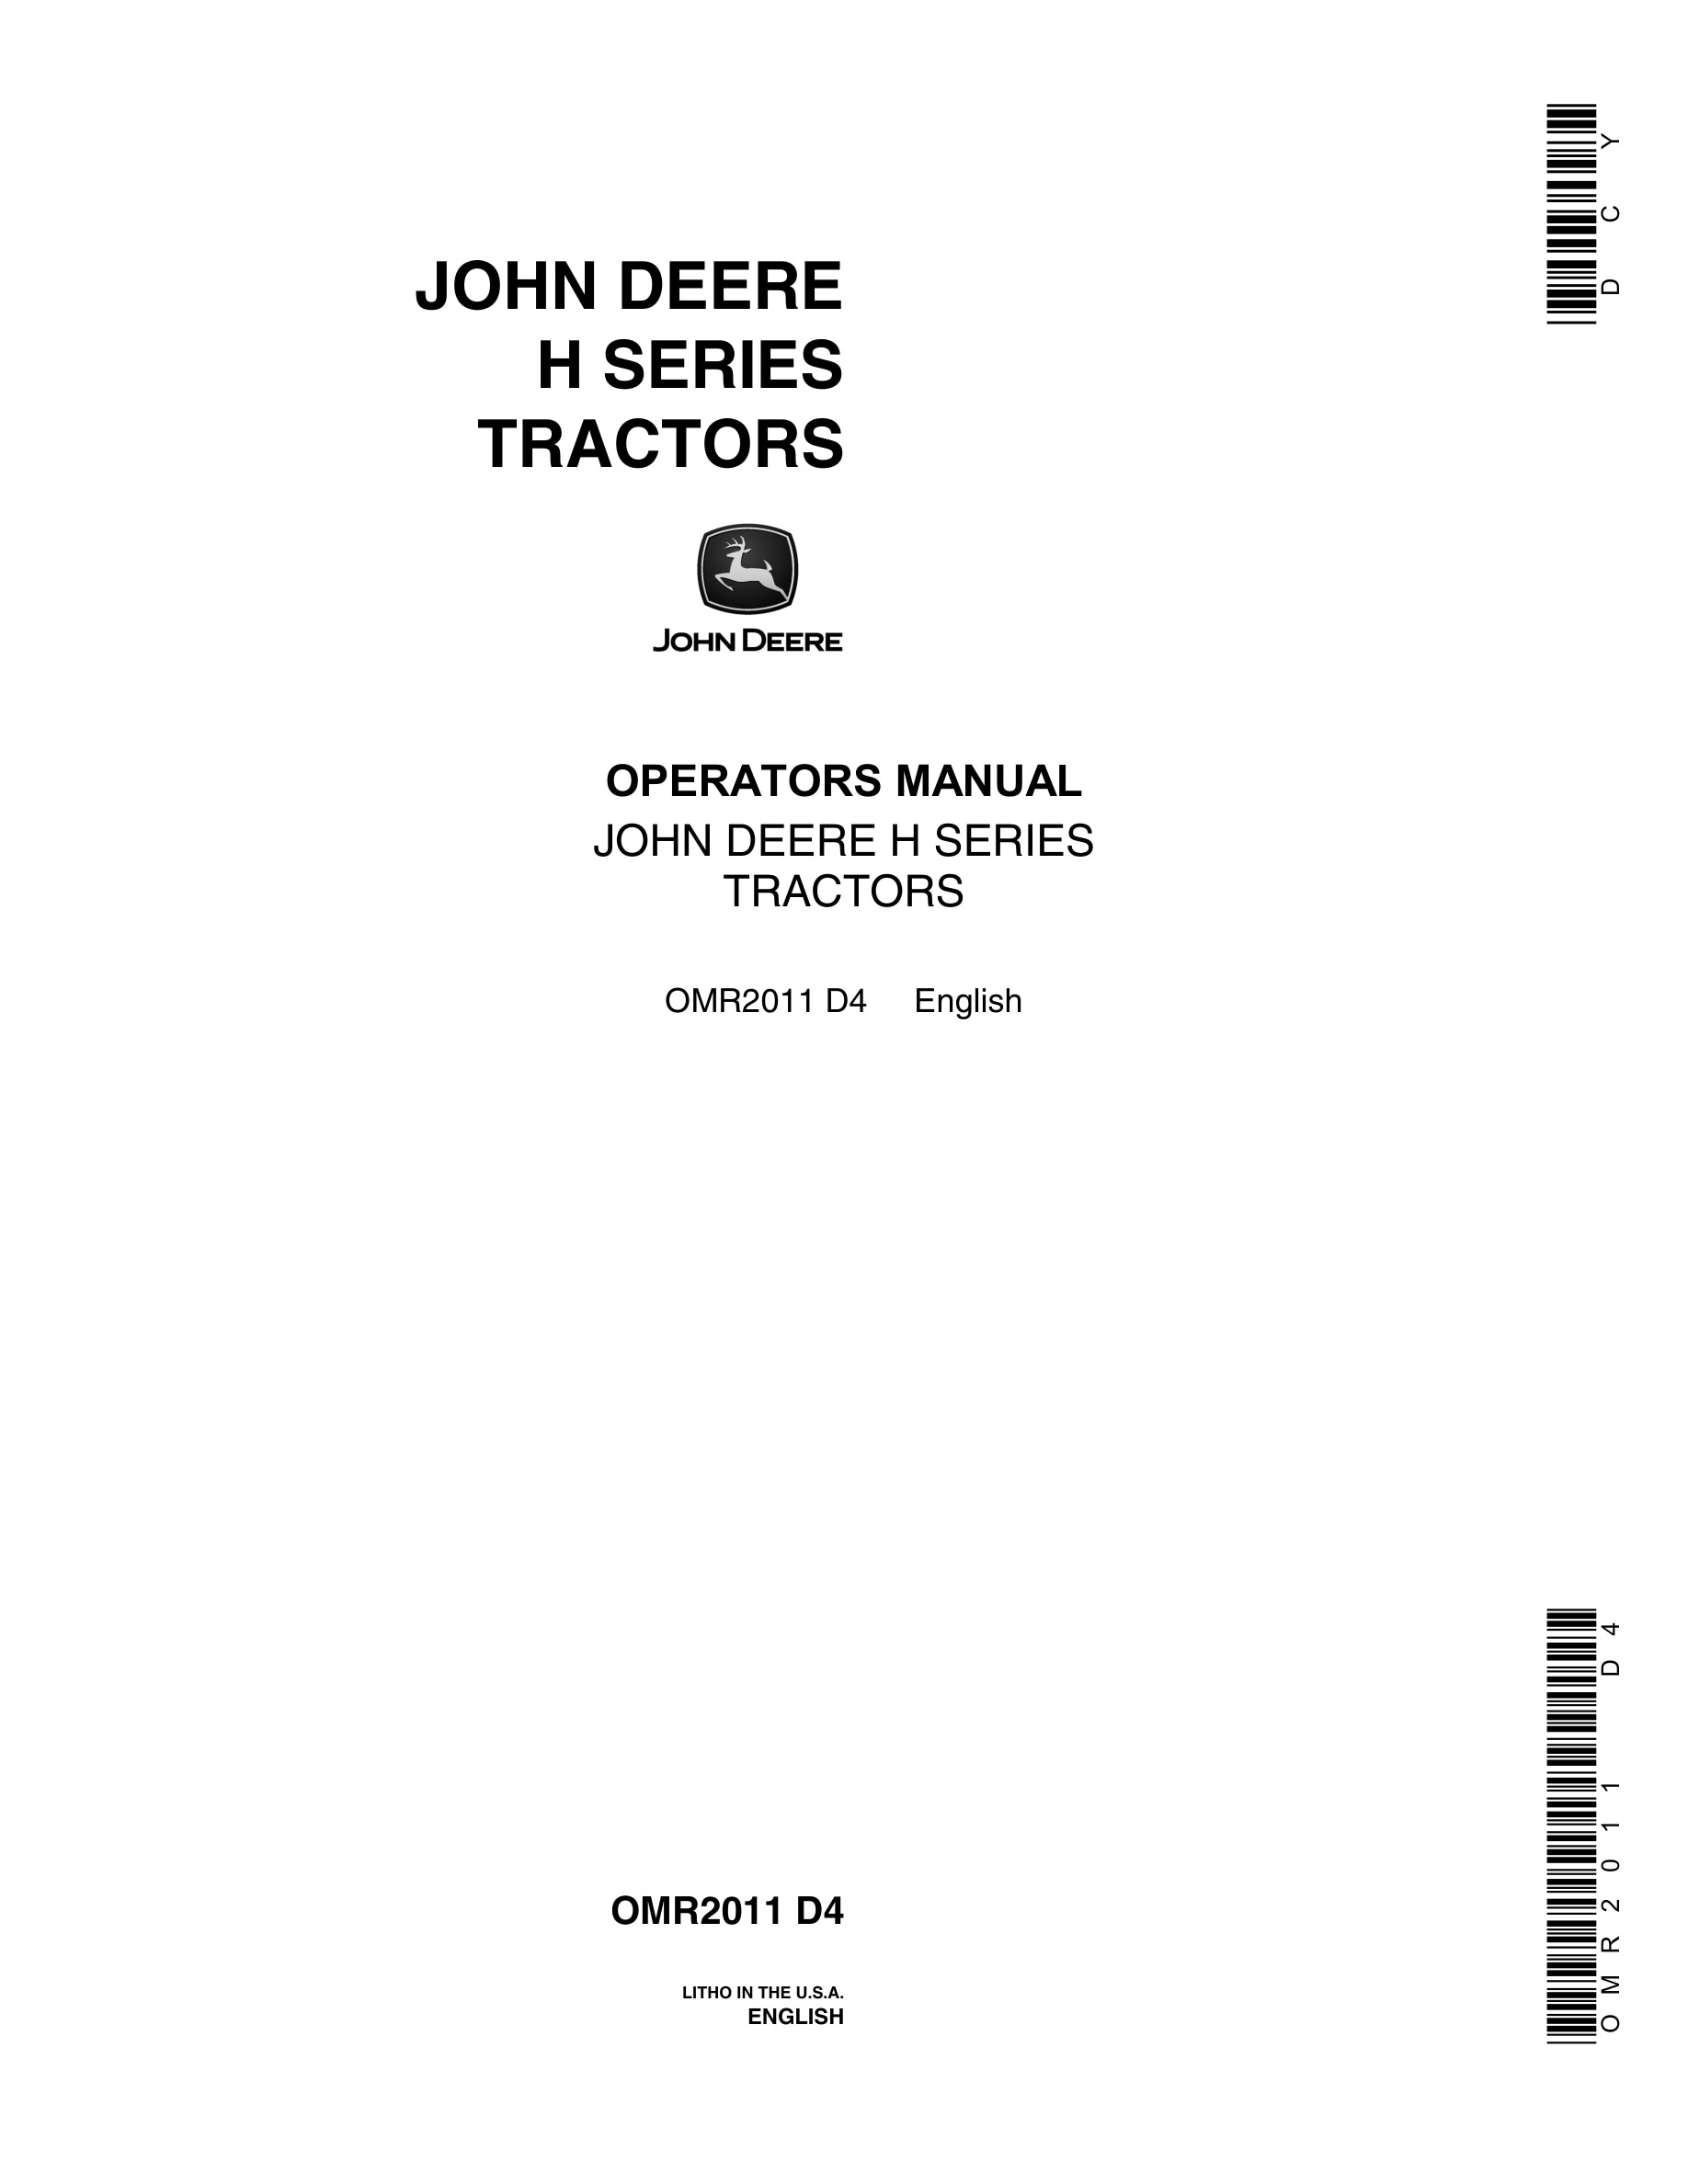 John Deere Model H Tractor Operator Manual OMR2011-1